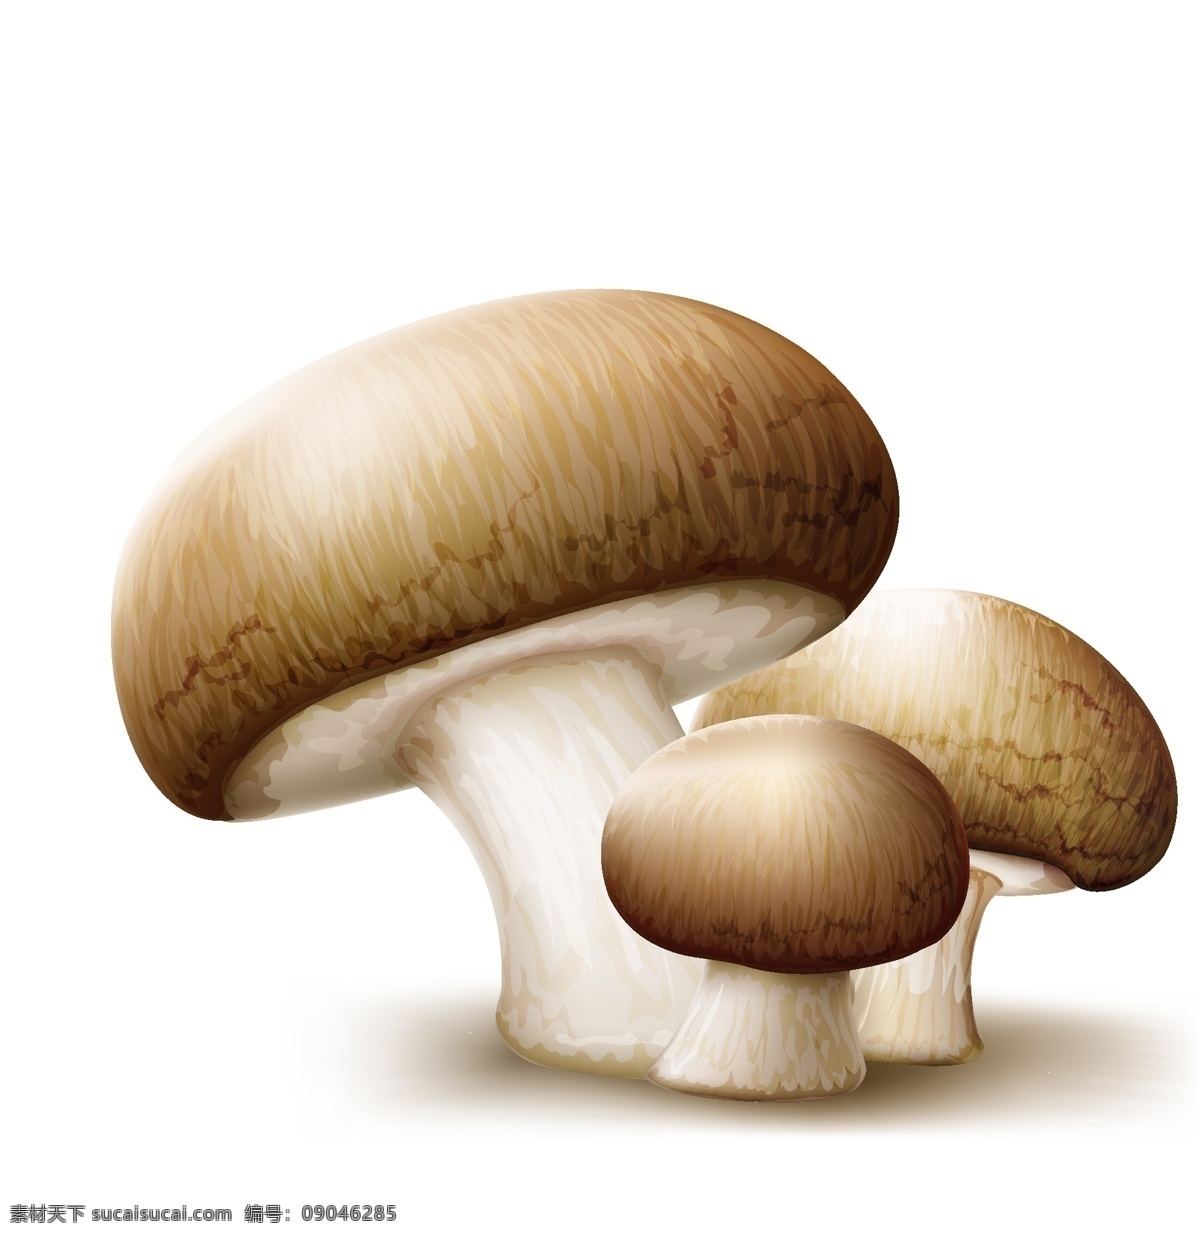 卡通蘑菇矢量 卡通 绘画 蘑菇 蘑菇设计 矢量蘑菇 蘑菇素材 食物蔬菜 蔬菜 水果 生物世界 矢量素材 白色